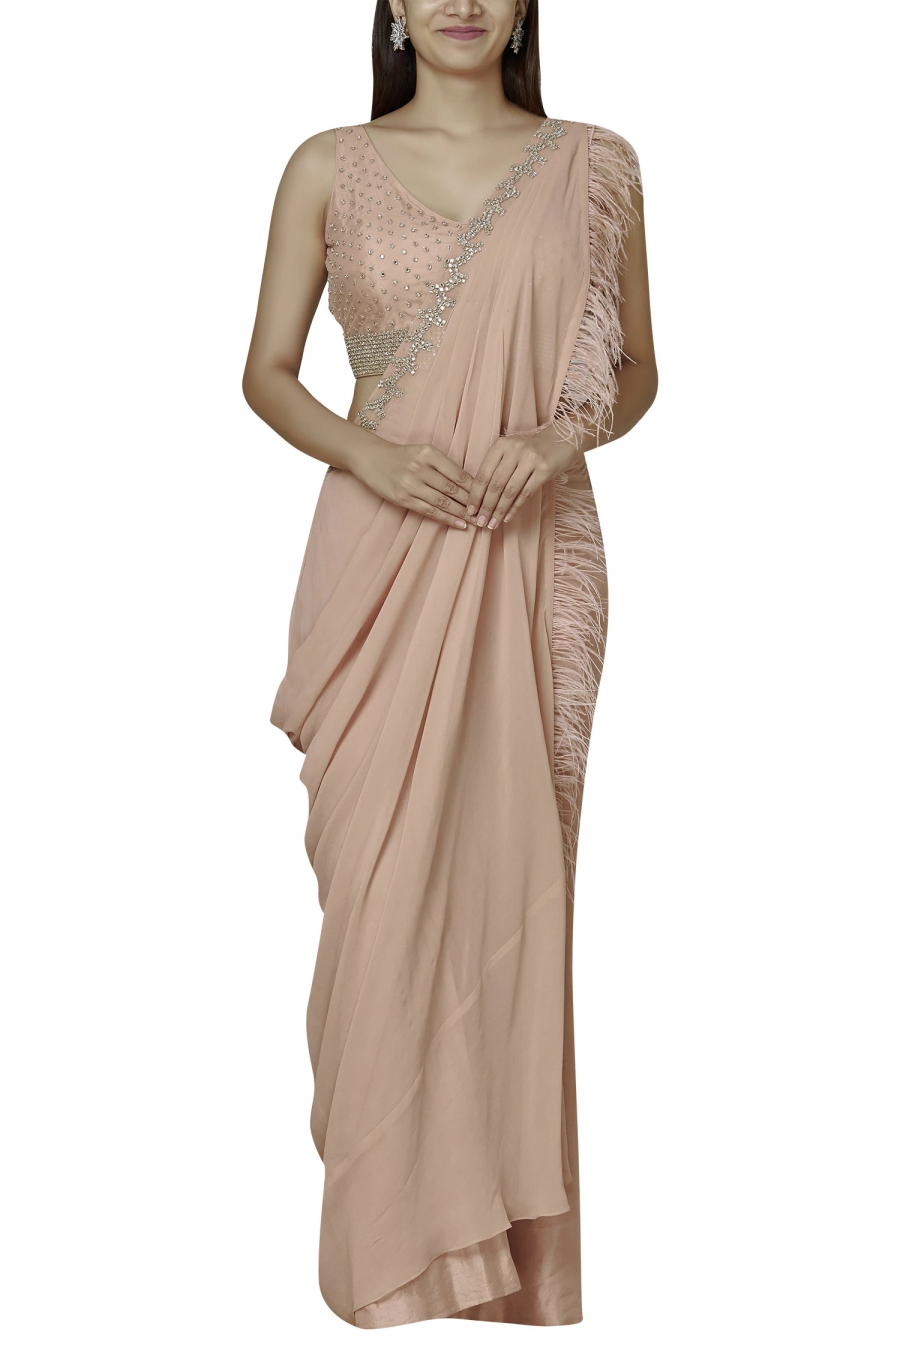 Stylish Beige Pre-Stitched Blended Silk Saree - Clothsvilla